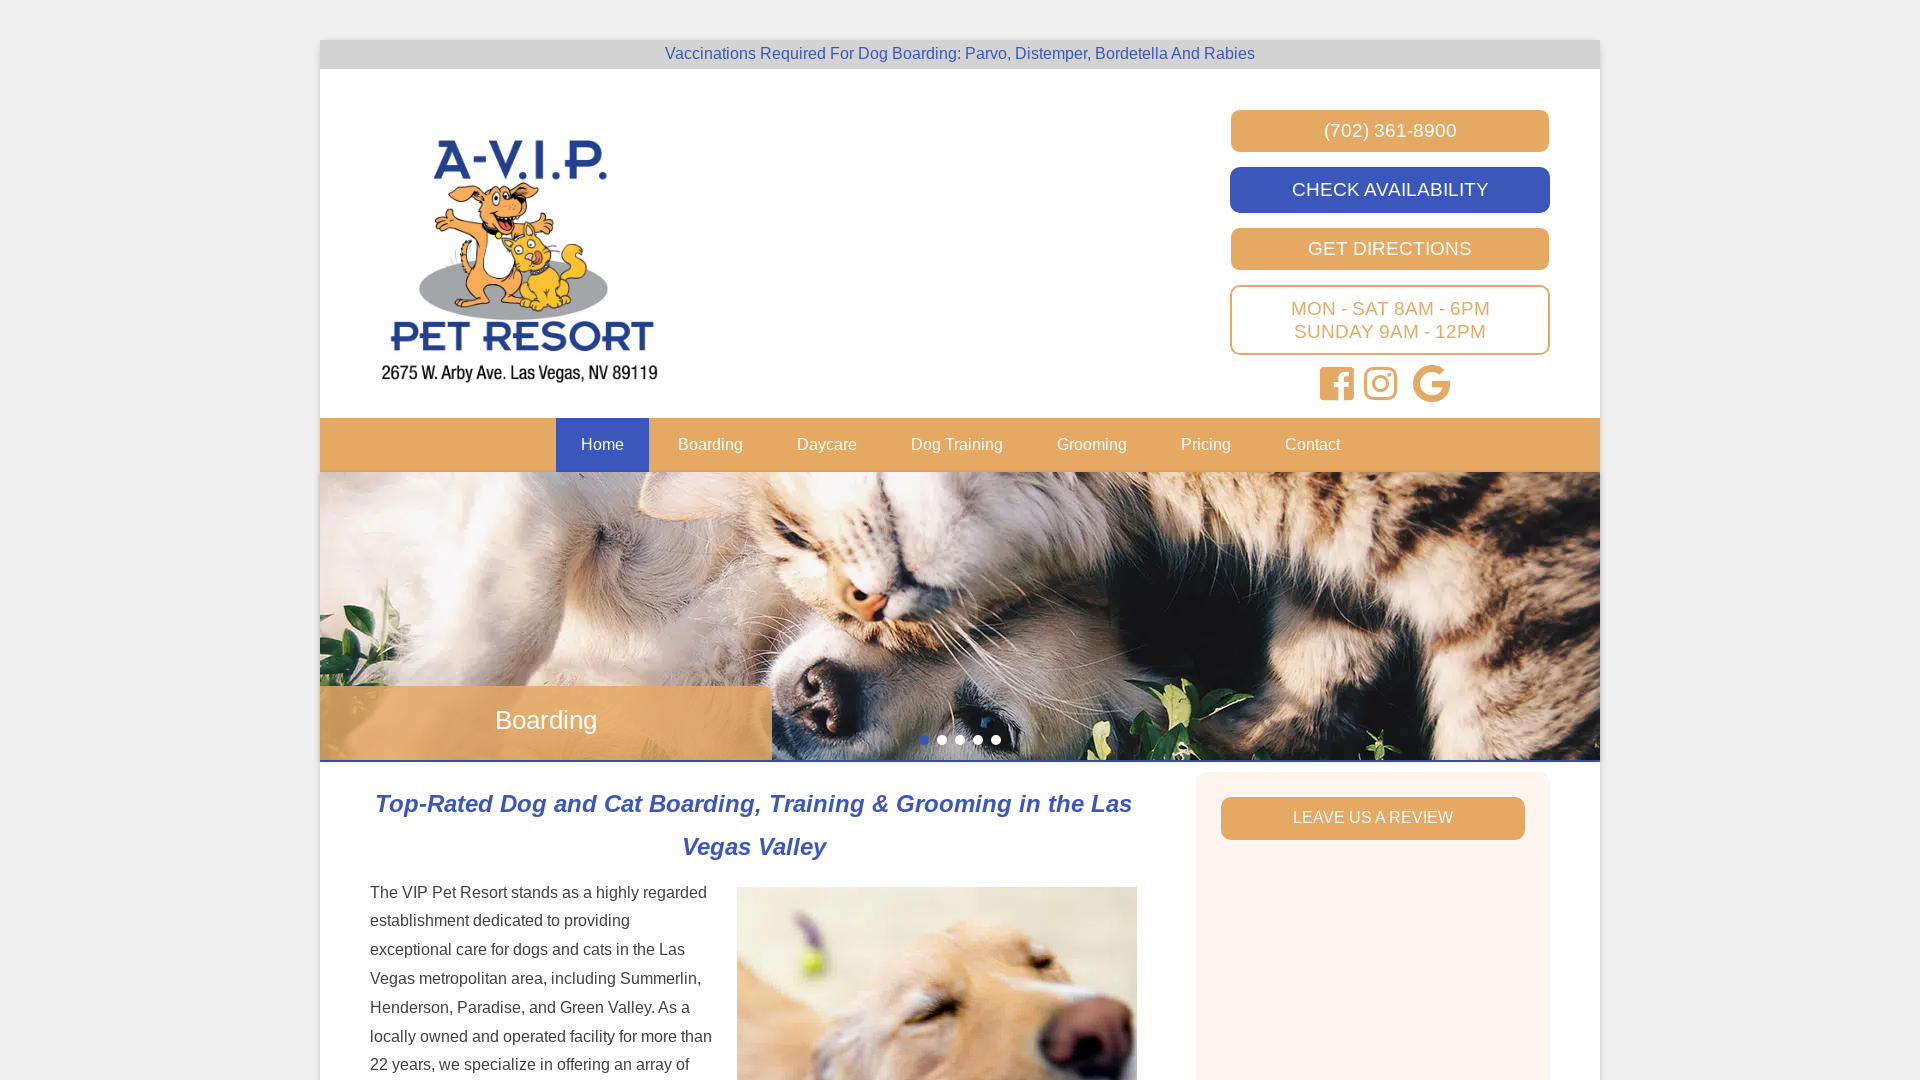 A-VIP Pet Resort